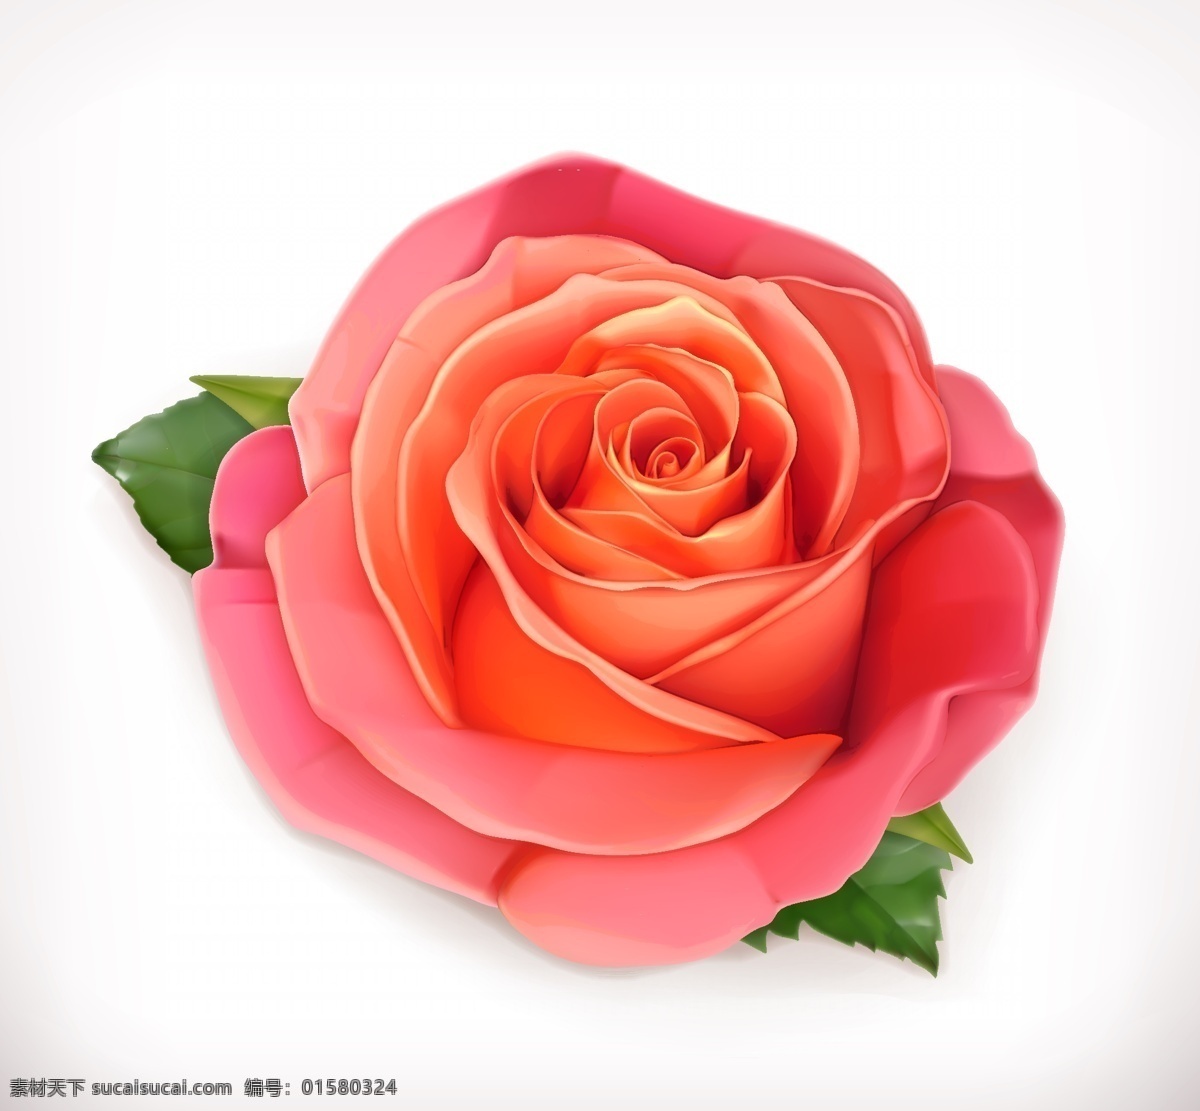 玫瑰花 矢量 花朵 红色玫瑰 格式 psd素材 高清图片